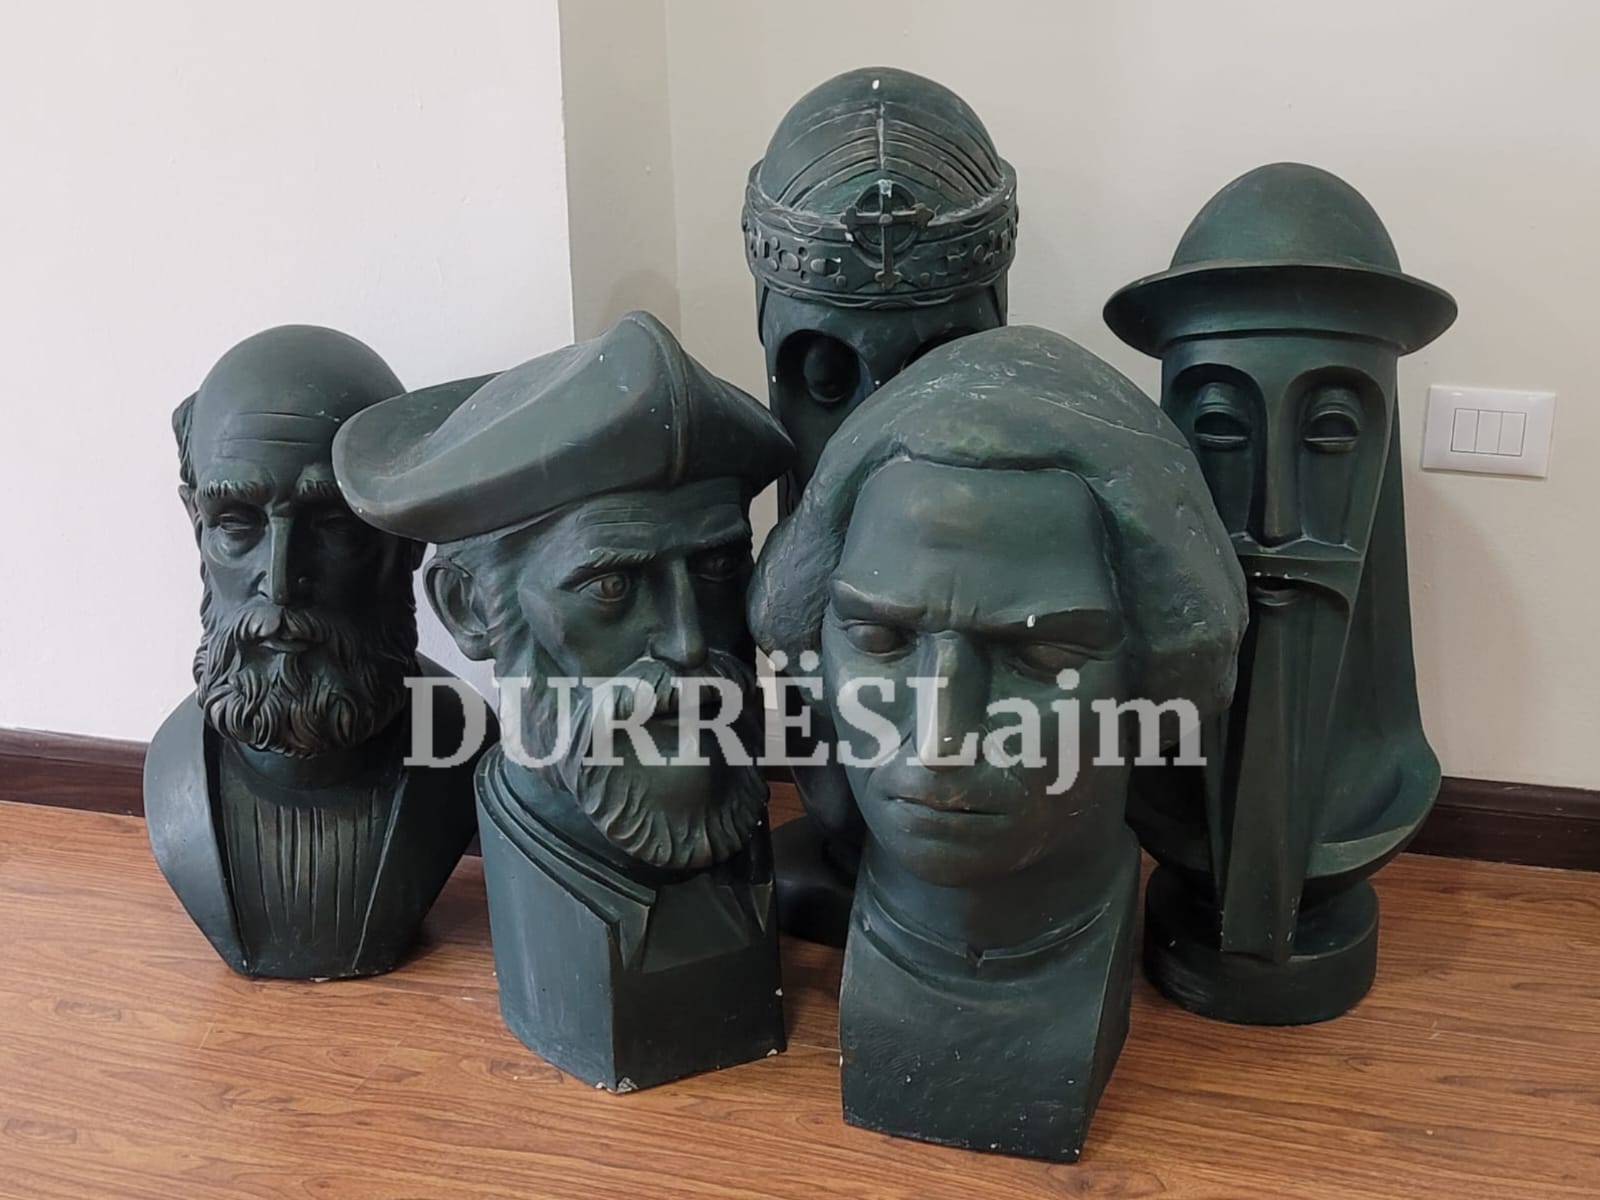 Figurat e njohura të historisë degdisen në një cep të sallës së Këshillit Bashkiak Durrës! (VIDEO)